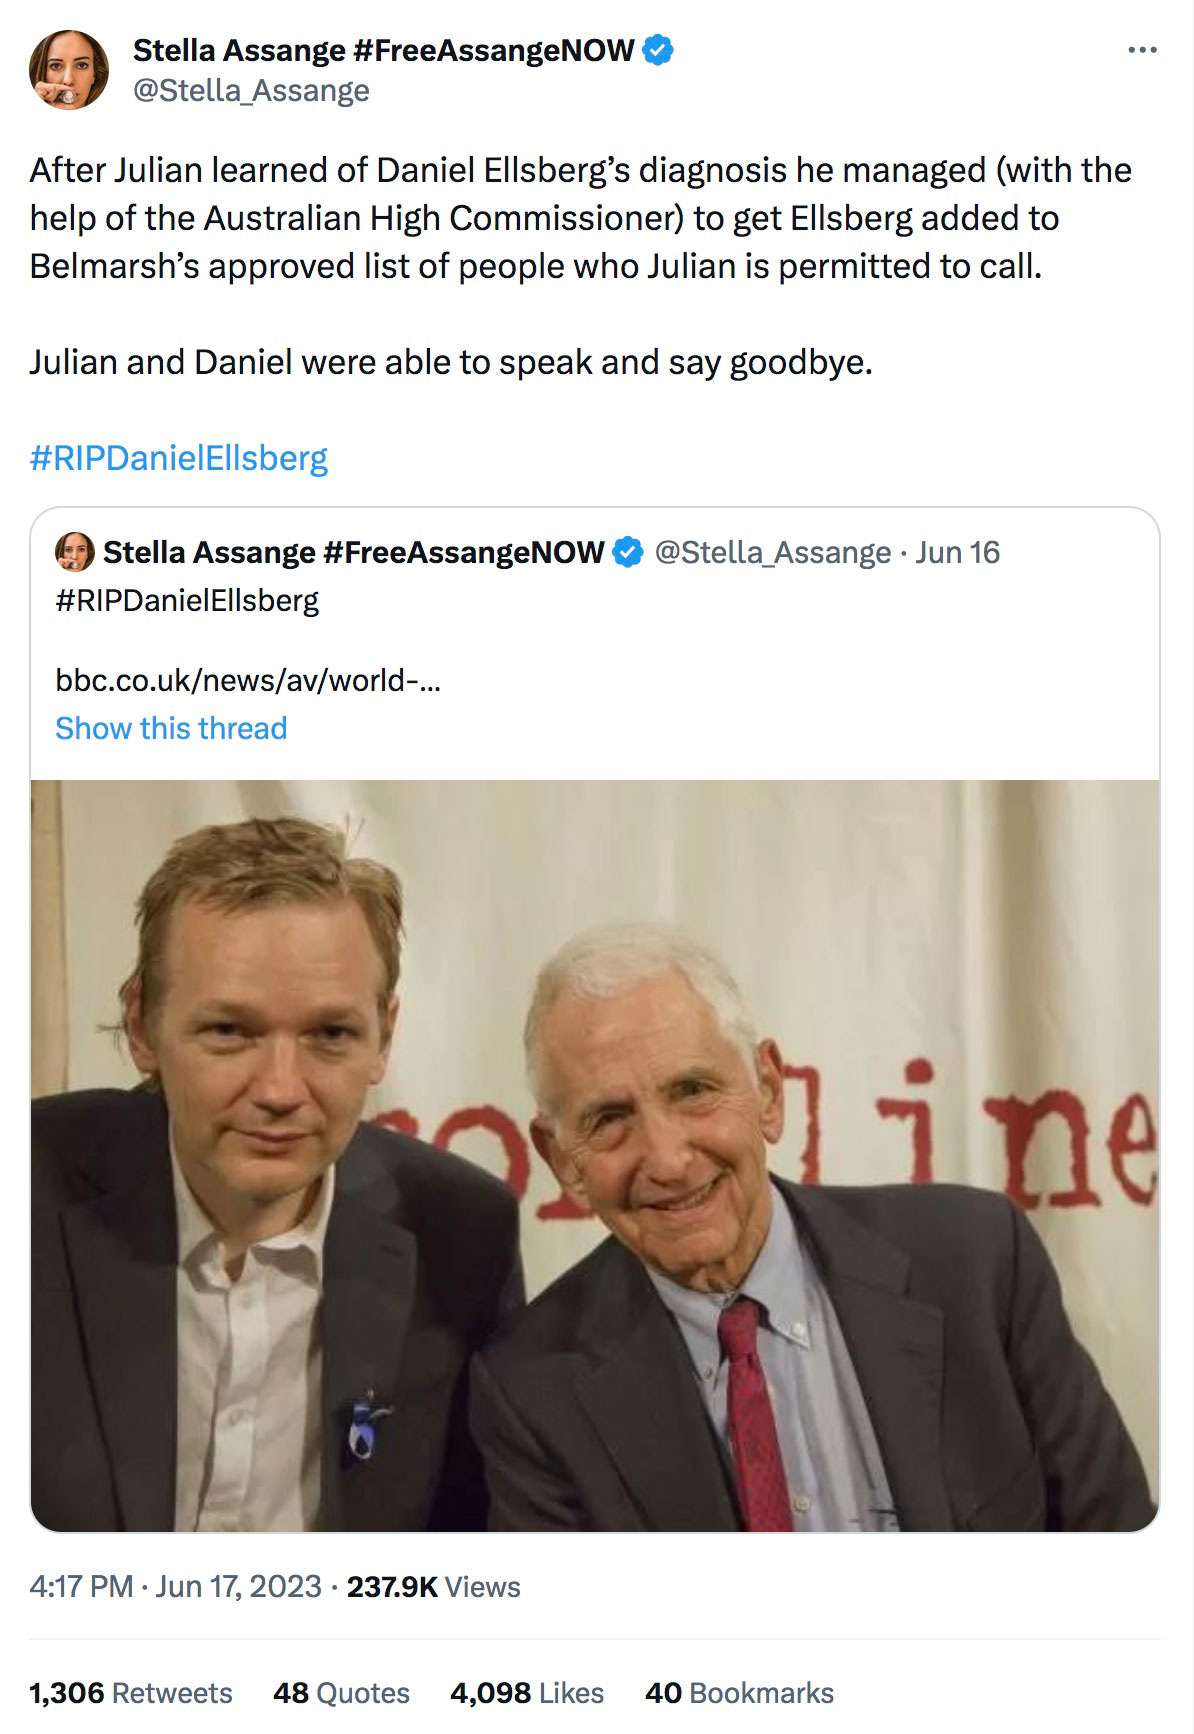 Julian Assange and Daniel Ellsberg: Final Farewell